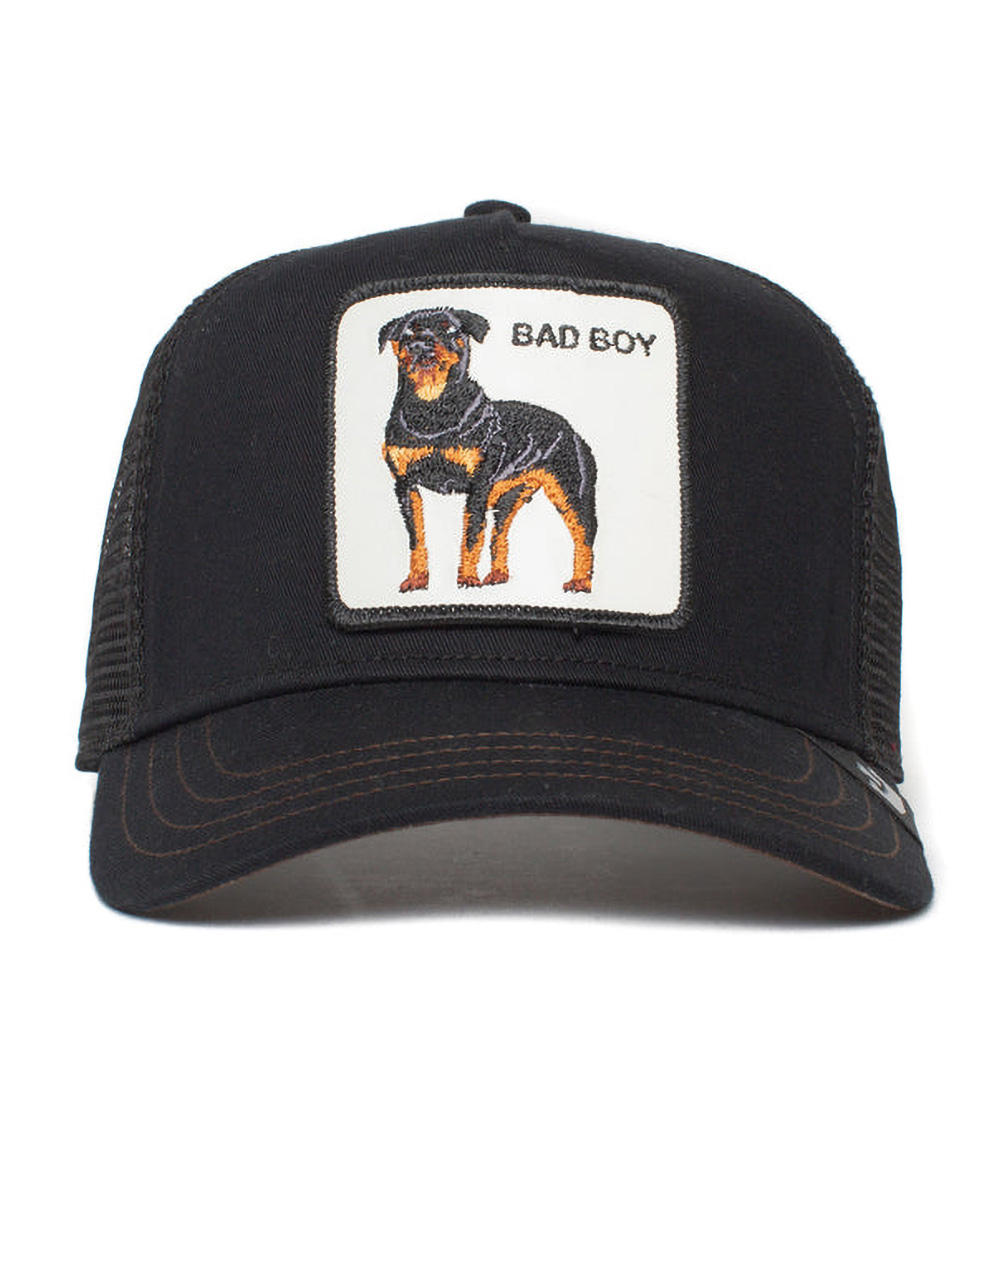 GOORIN BROS. The Baddest Boy Trucker Hat